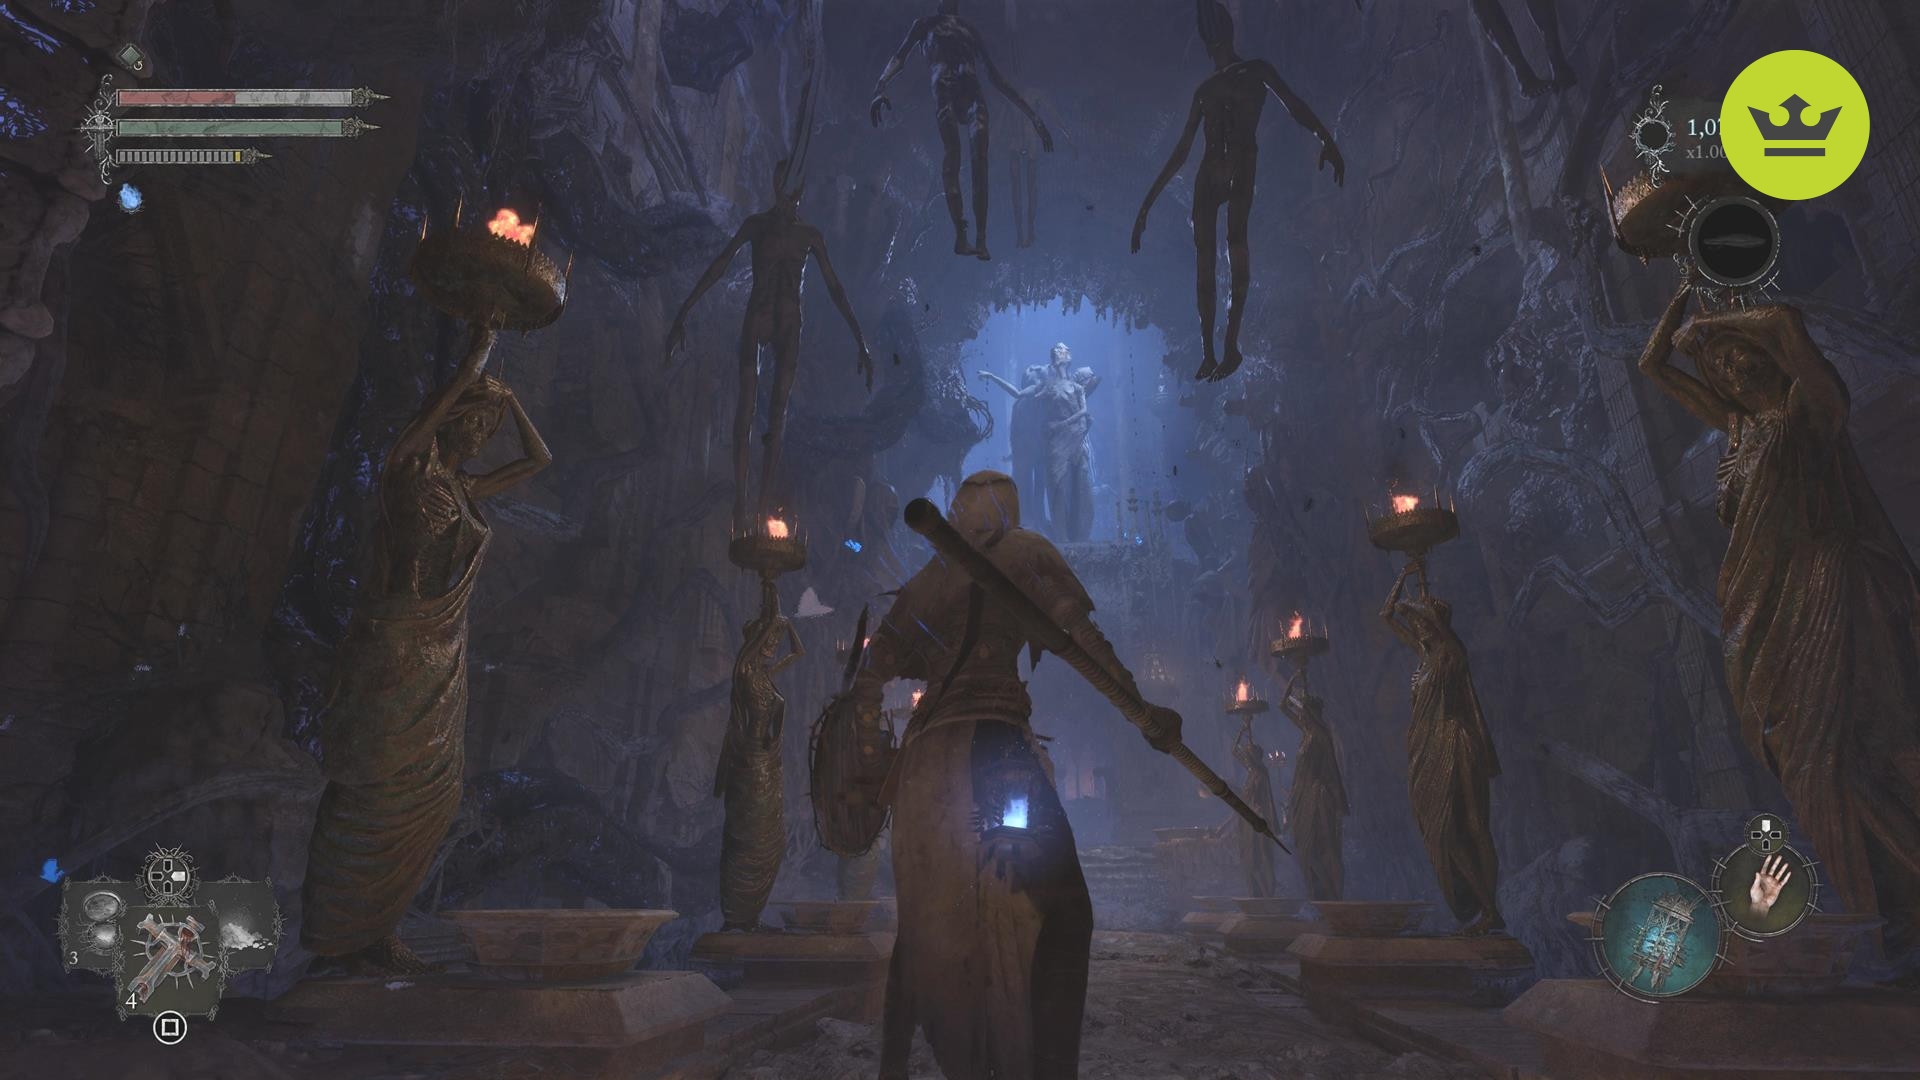 Lords of the Fallen レビュー: 吊り下げられた死体と火の松明を持った彫像に囲まれた、暗いアンブラル領域にいるプレイヤーのゲーム内スクリーンショット